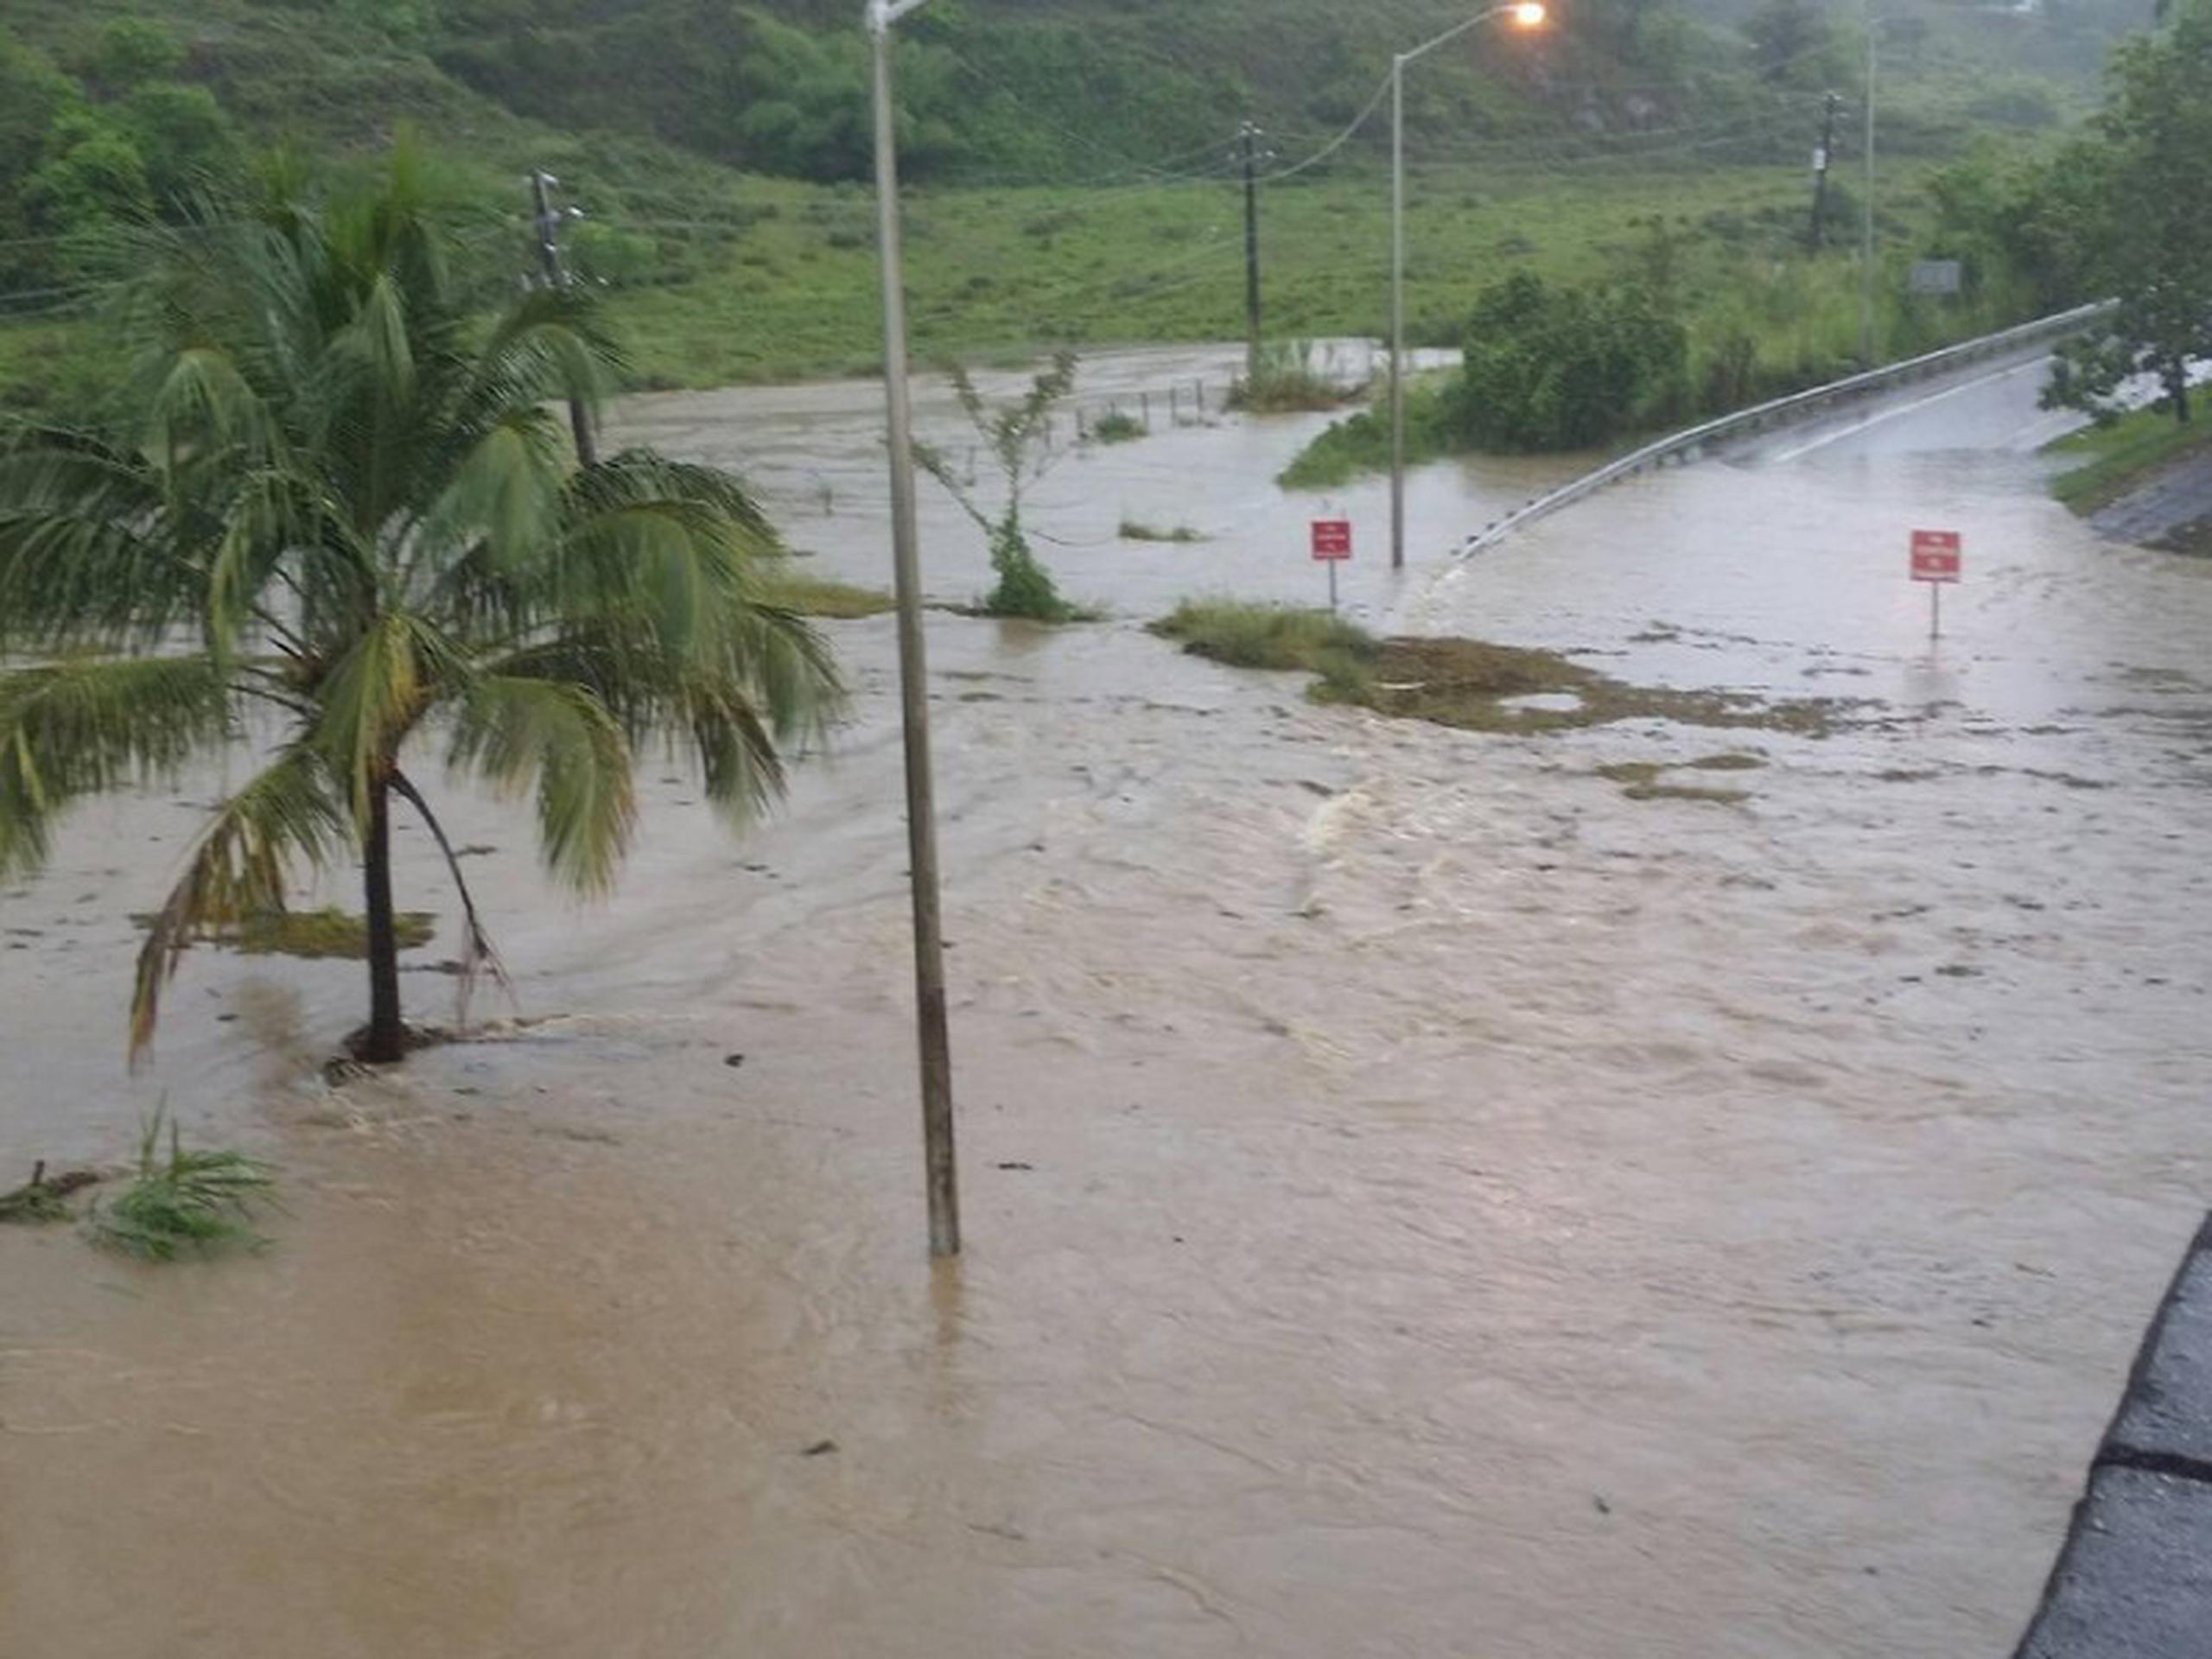 
El nivel del río Blanco en Naguabo creció significativamente y dejó varias carreteras intrasnsitables. (Suministrada / Caza Noticias Ismael Martínez)
